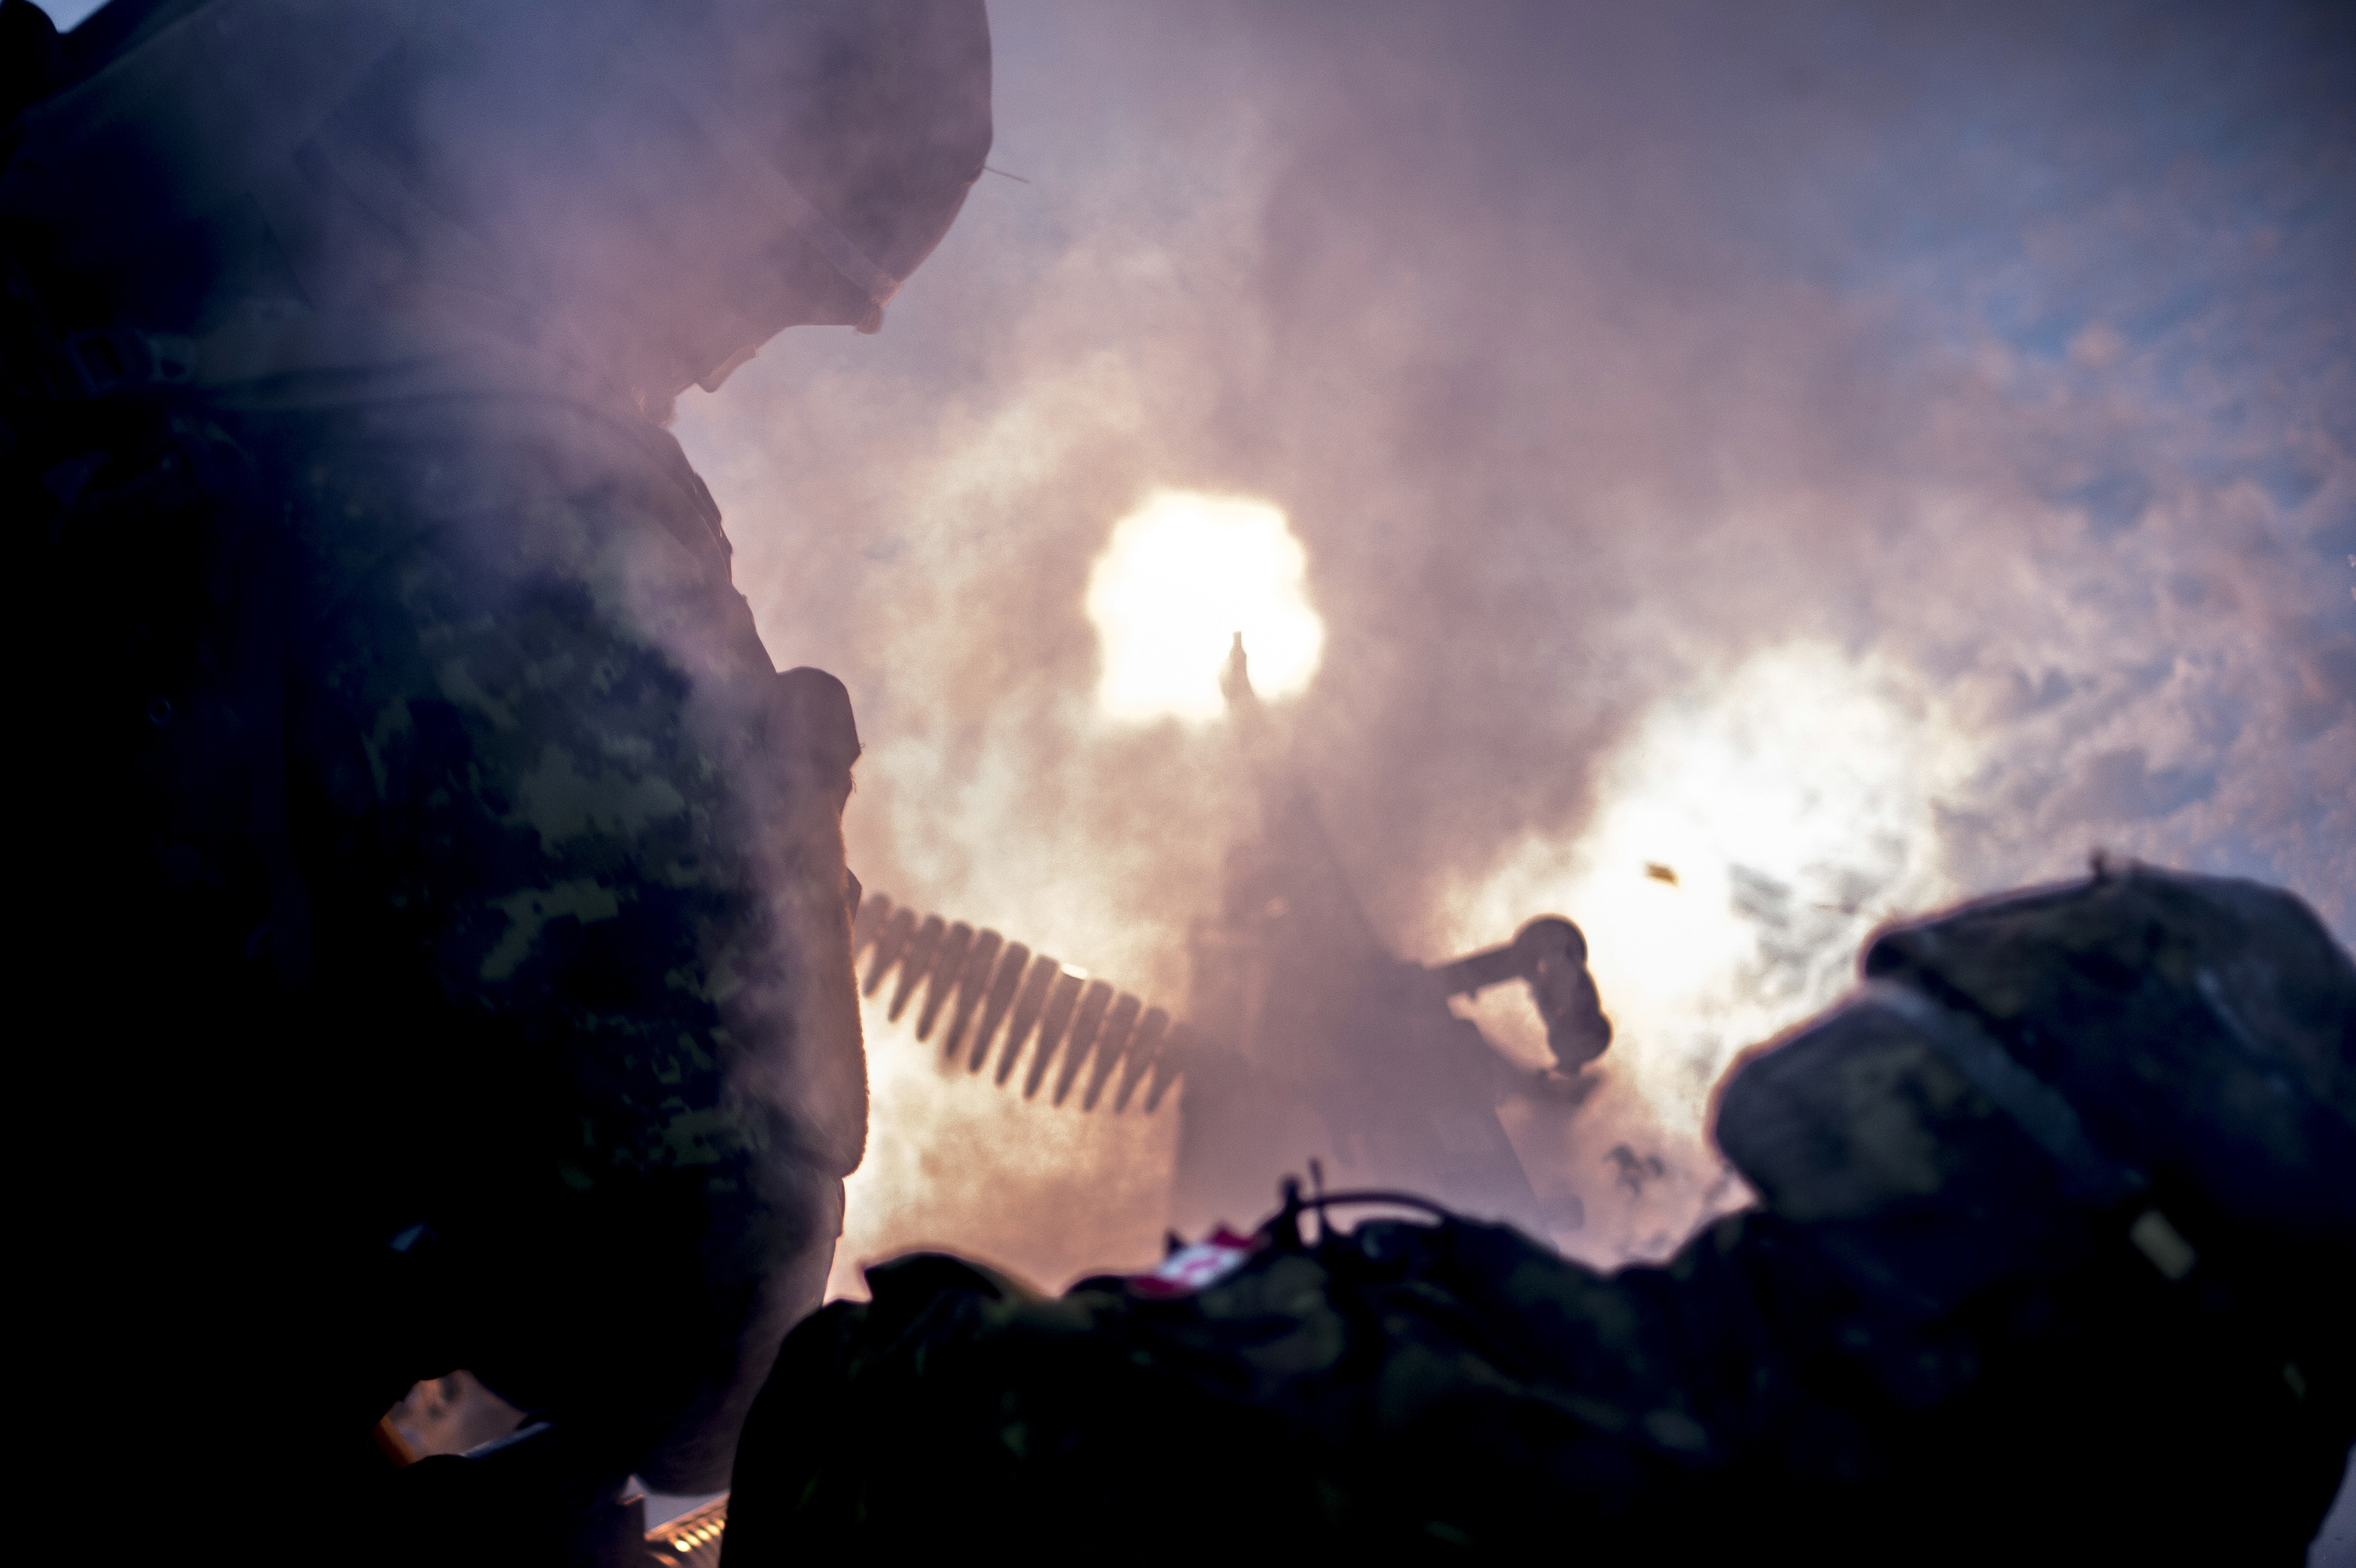 Скачать обои бесплатно Дым, Оружие, Солдат, Военные, Пулемёт картинка на рабочий стол ПК